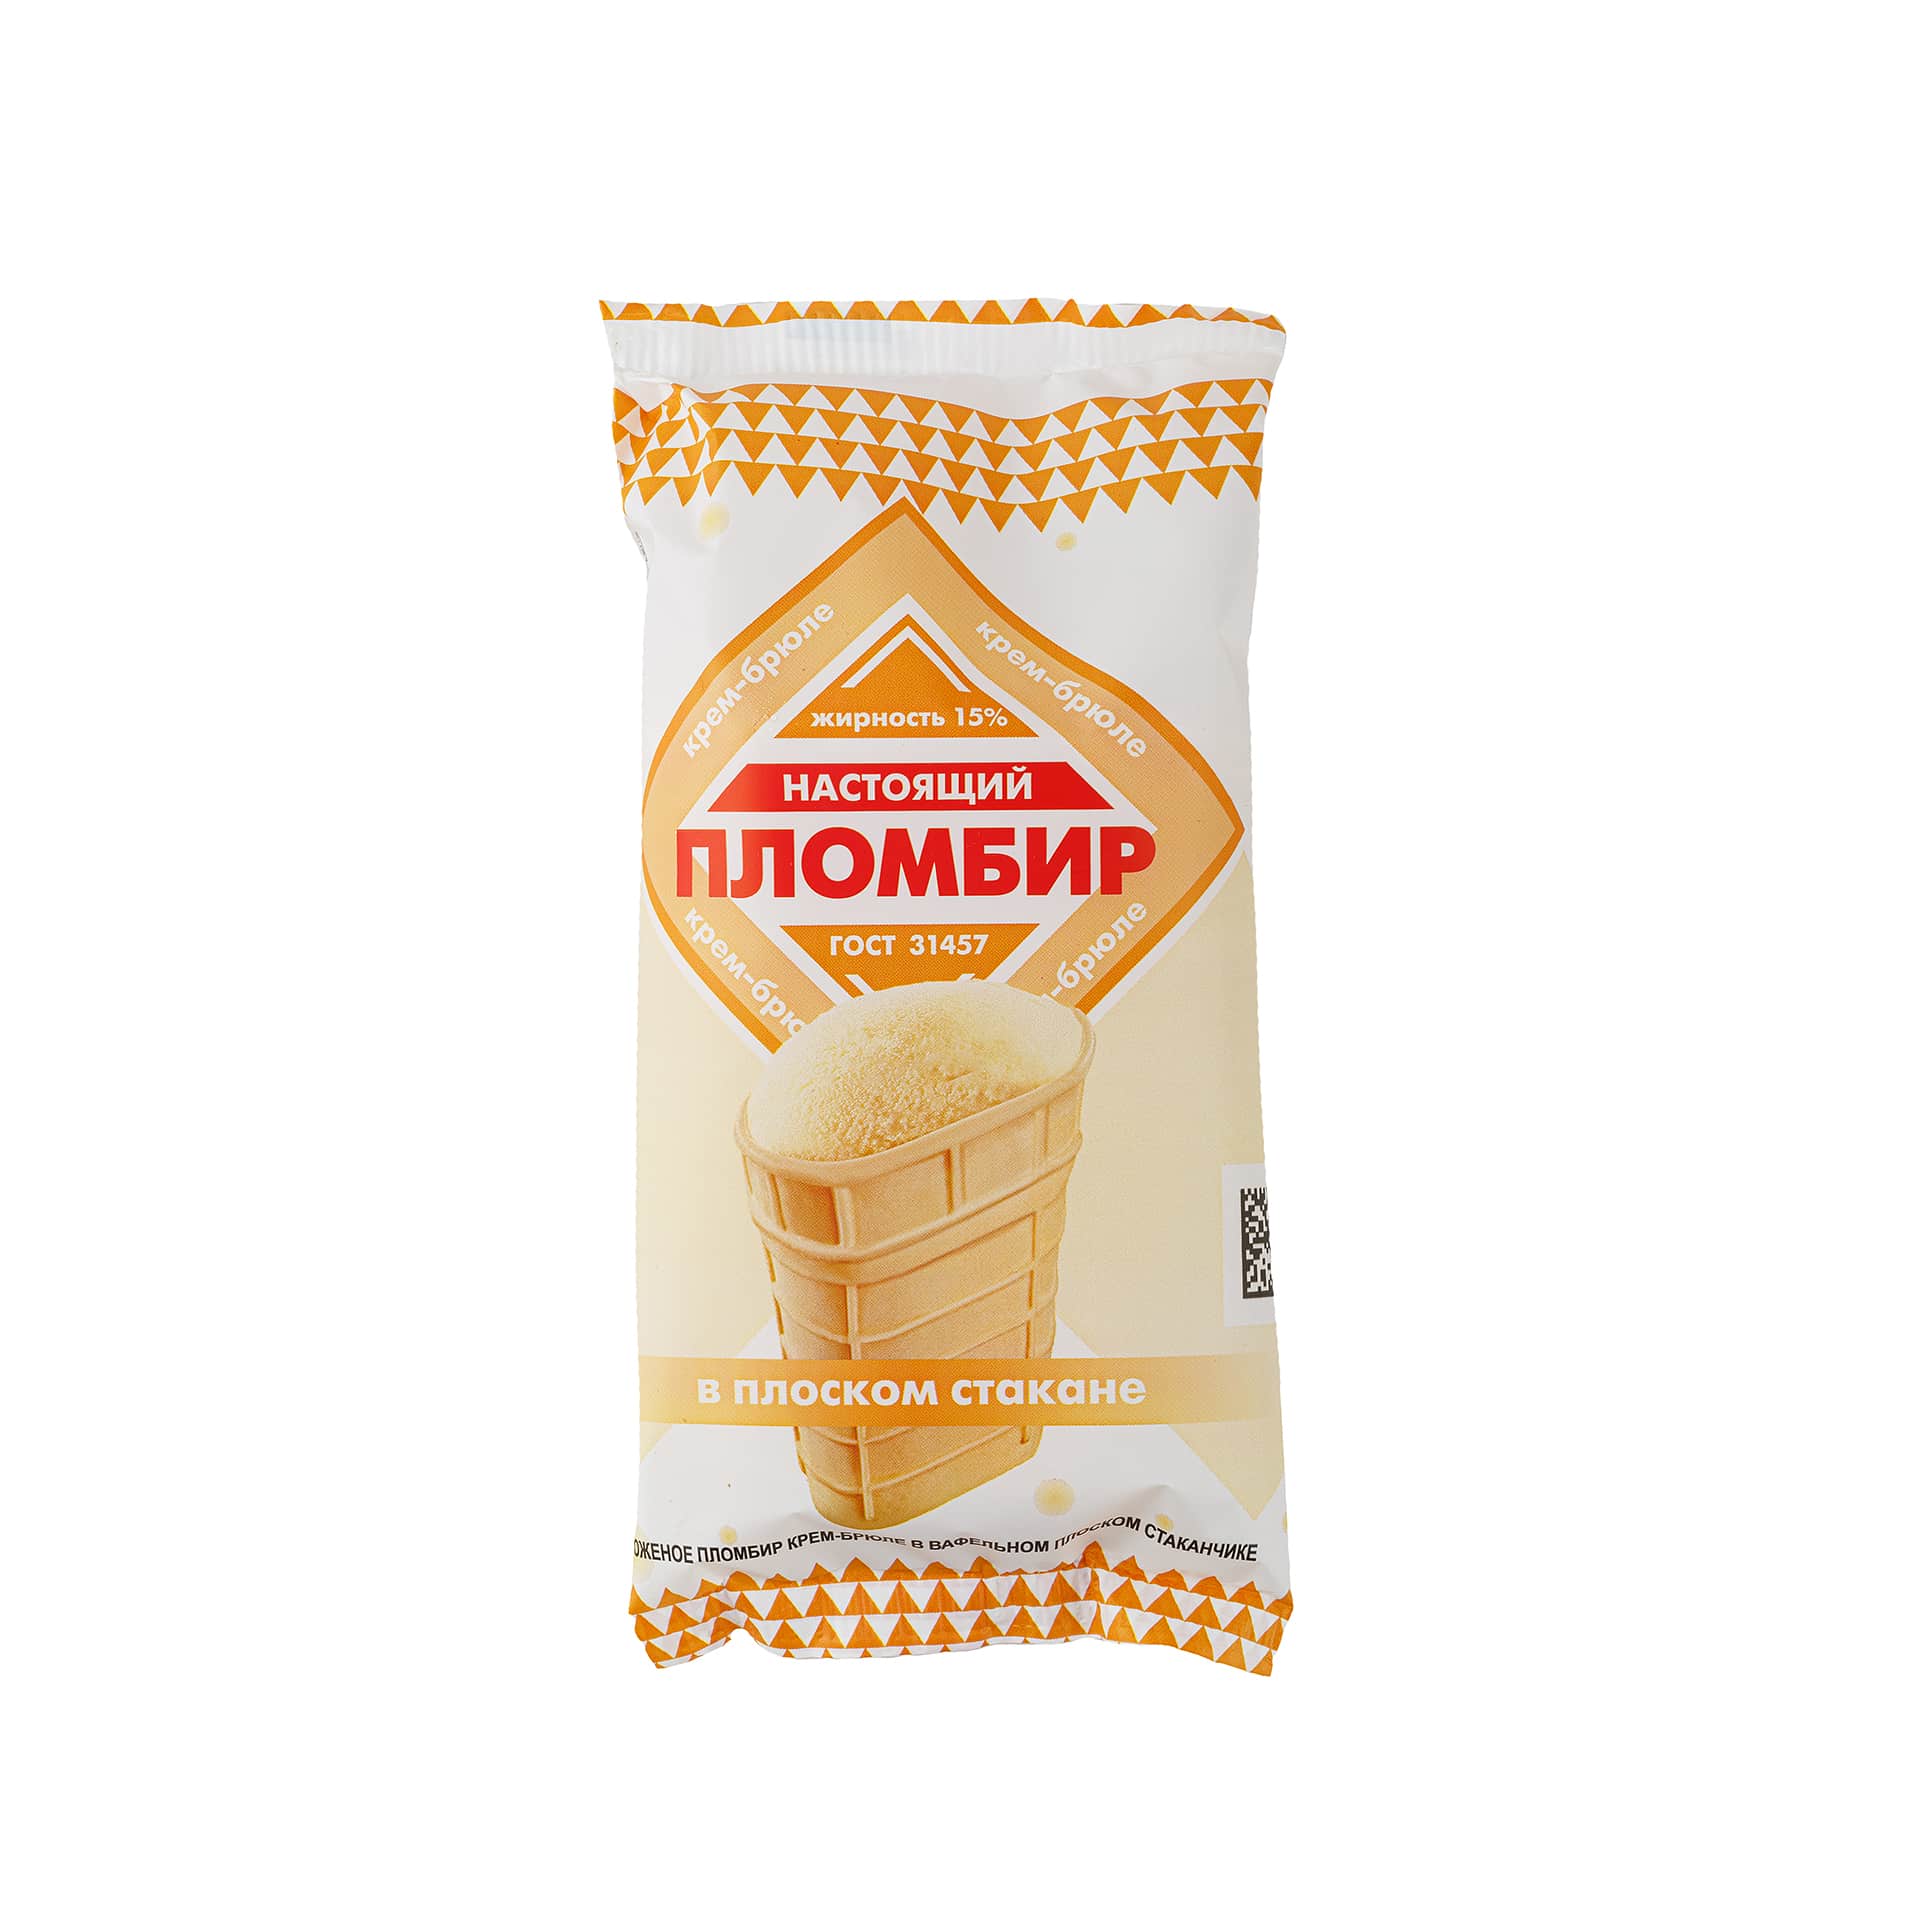 Мороженое пломбир крем-брюле вафельный плоский стаканчик Настоящий пломбир 90 г 627LED, общий вид, купить оптом с доставкой по москве и московской области, недорого, низкая цена